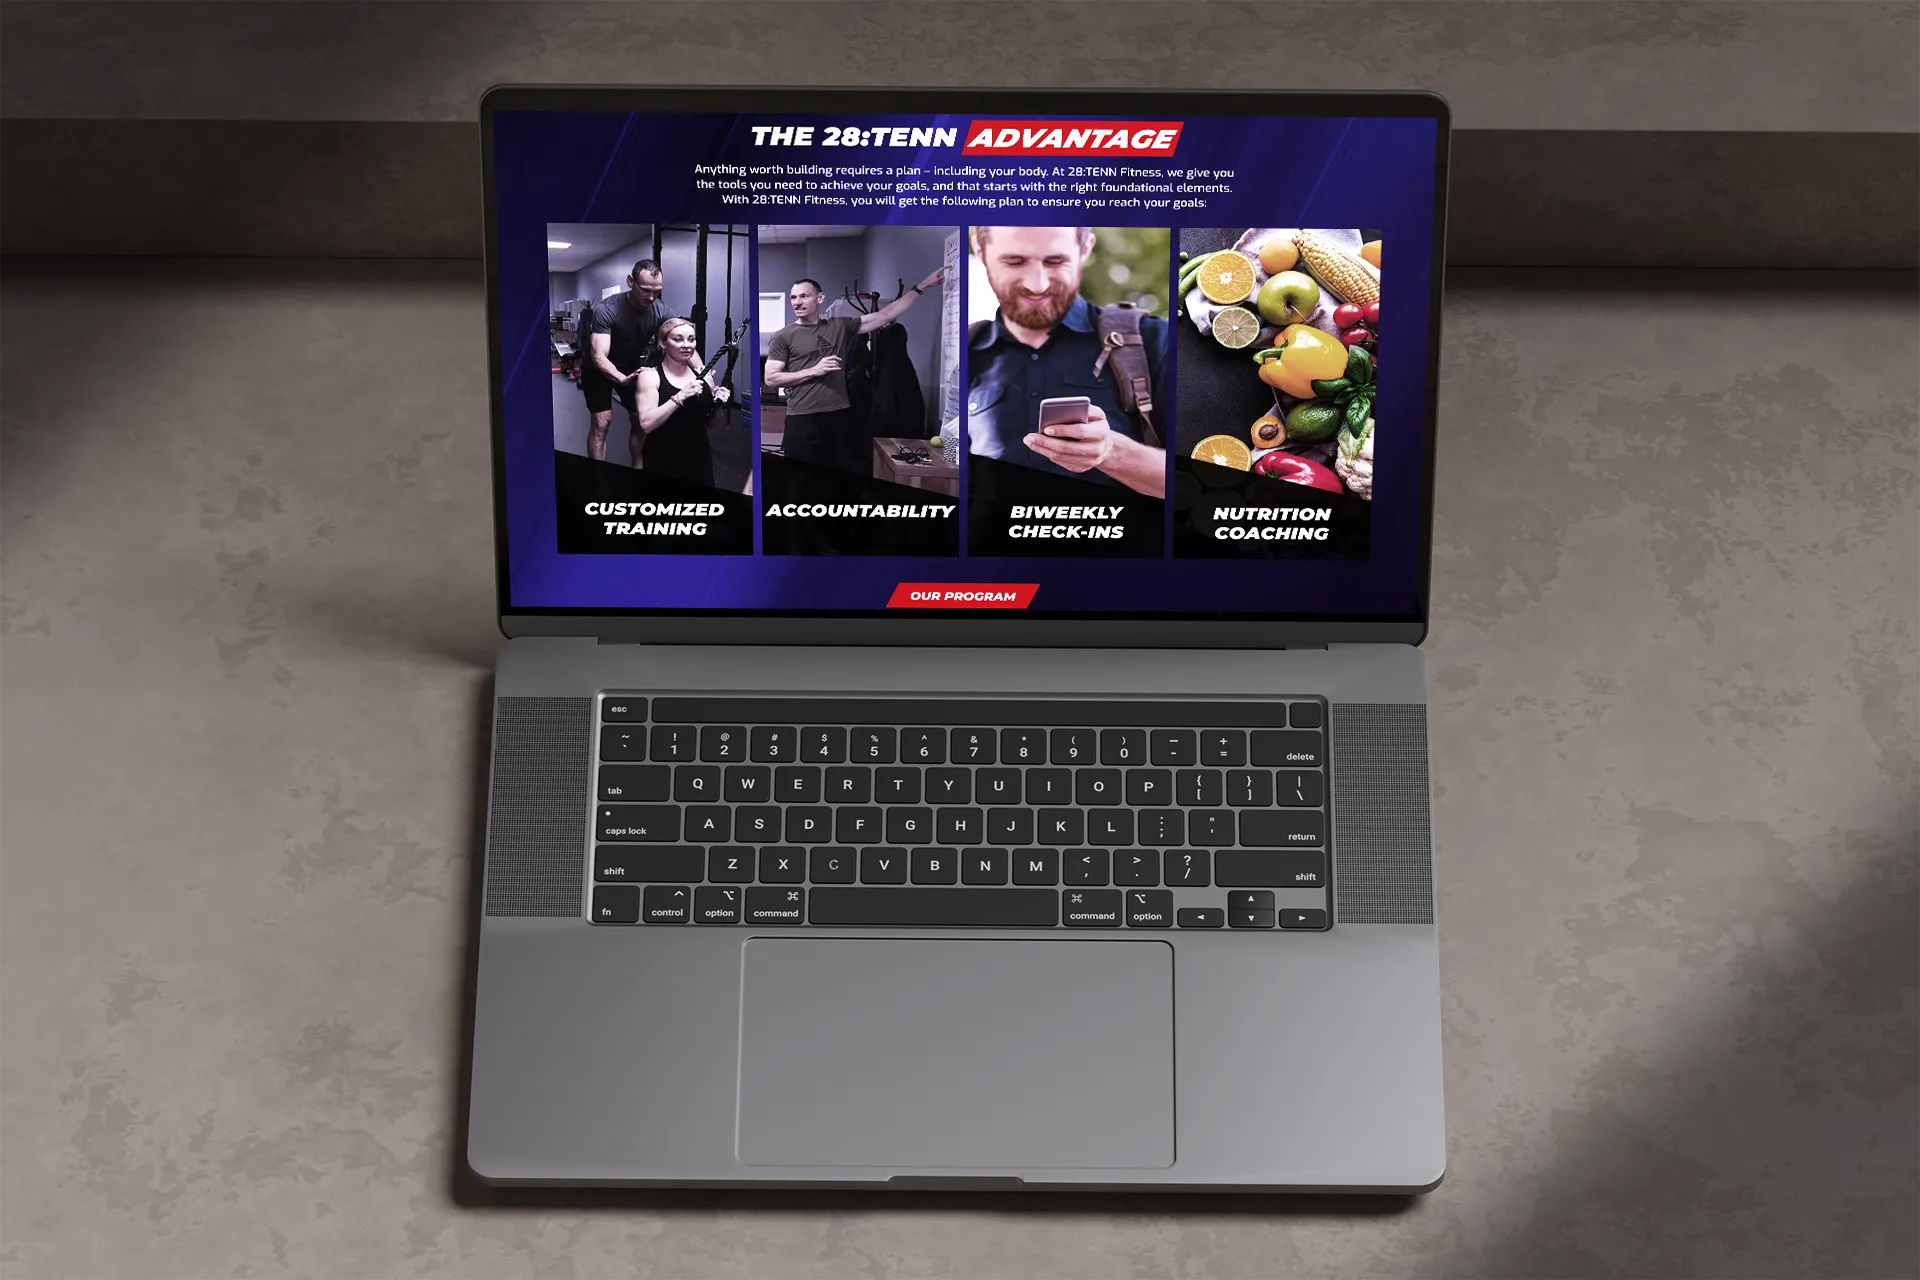 28:Tenn Fitness Website on laptop against a dark background